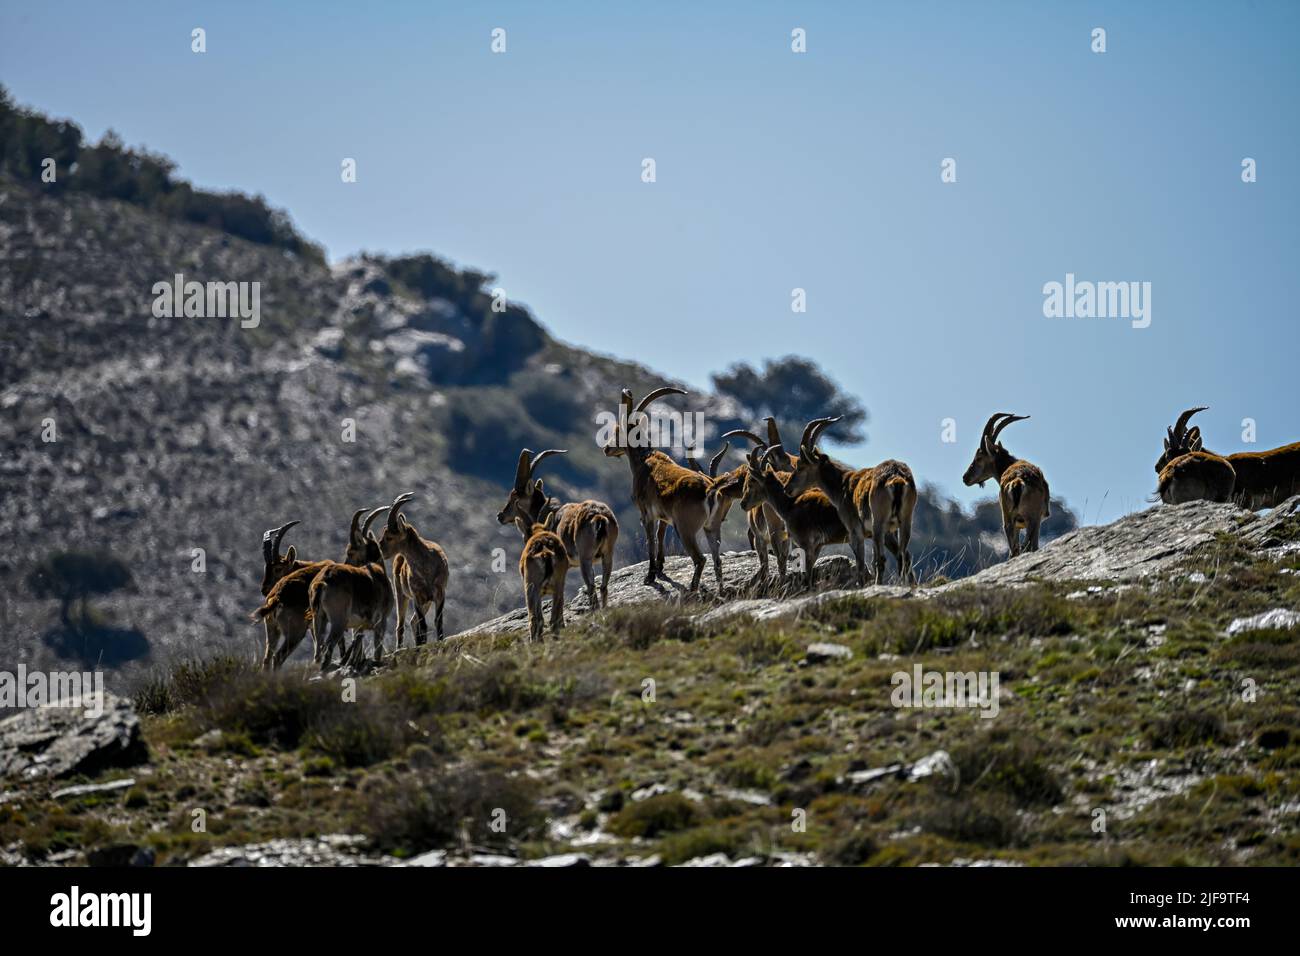 El ibex ibérico es una de las especies de bovides del género Capra que existen en Europa Foto de stock